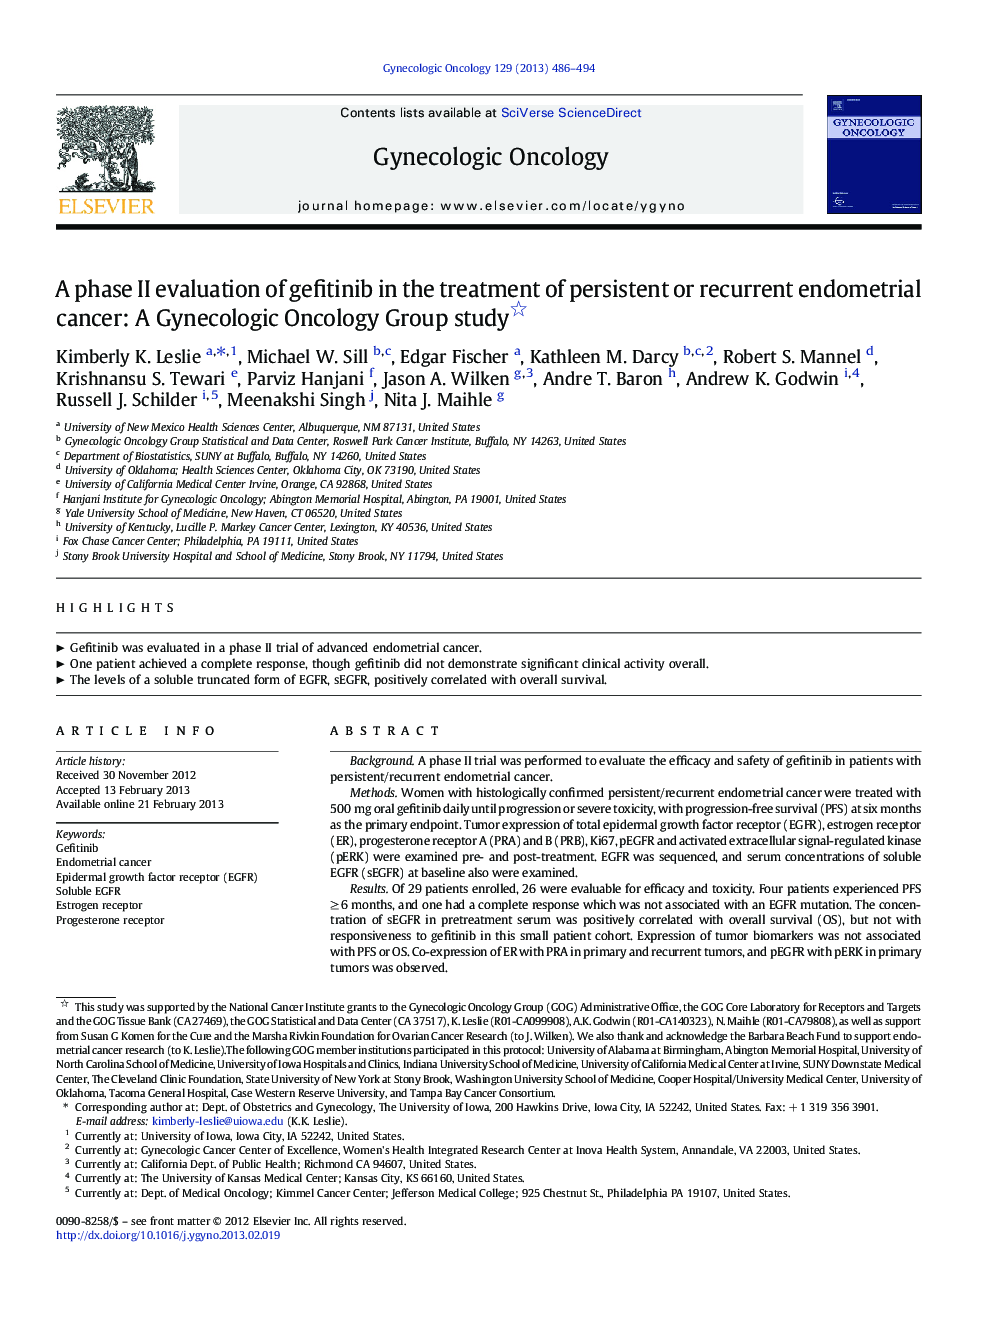 ارزیابی فاز دوم جفتیتینیب در درمان سرطان های اندومتری مداوم یا مکرر: یک مطالعه گروه انکولوژیک زنان 